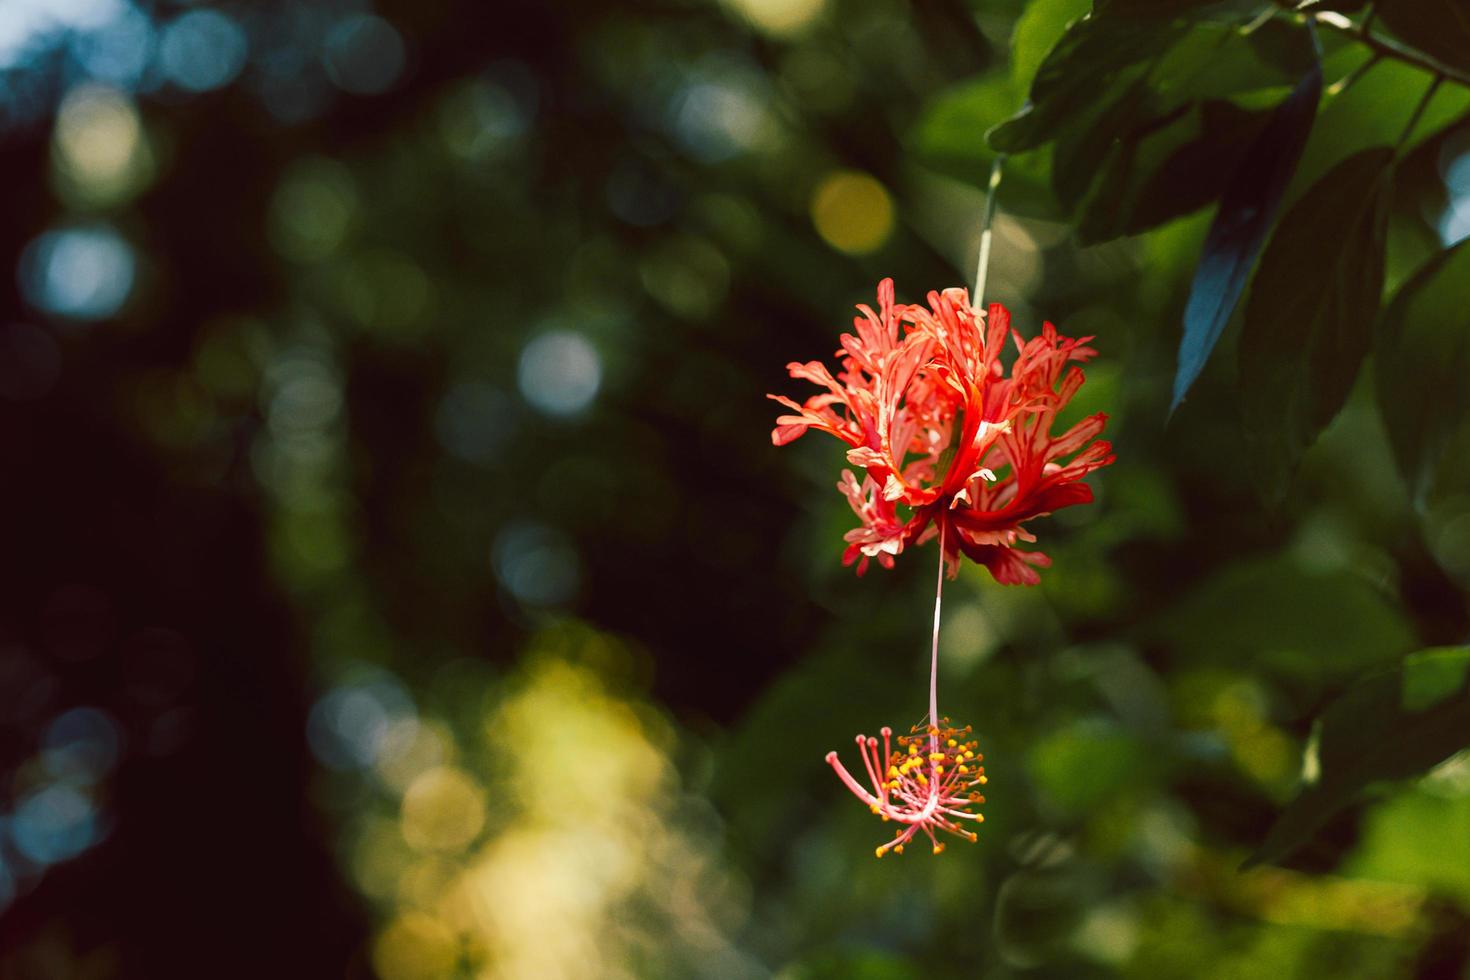 flor de hibisco schizopetalus con flecos que florece en el jardín. foto